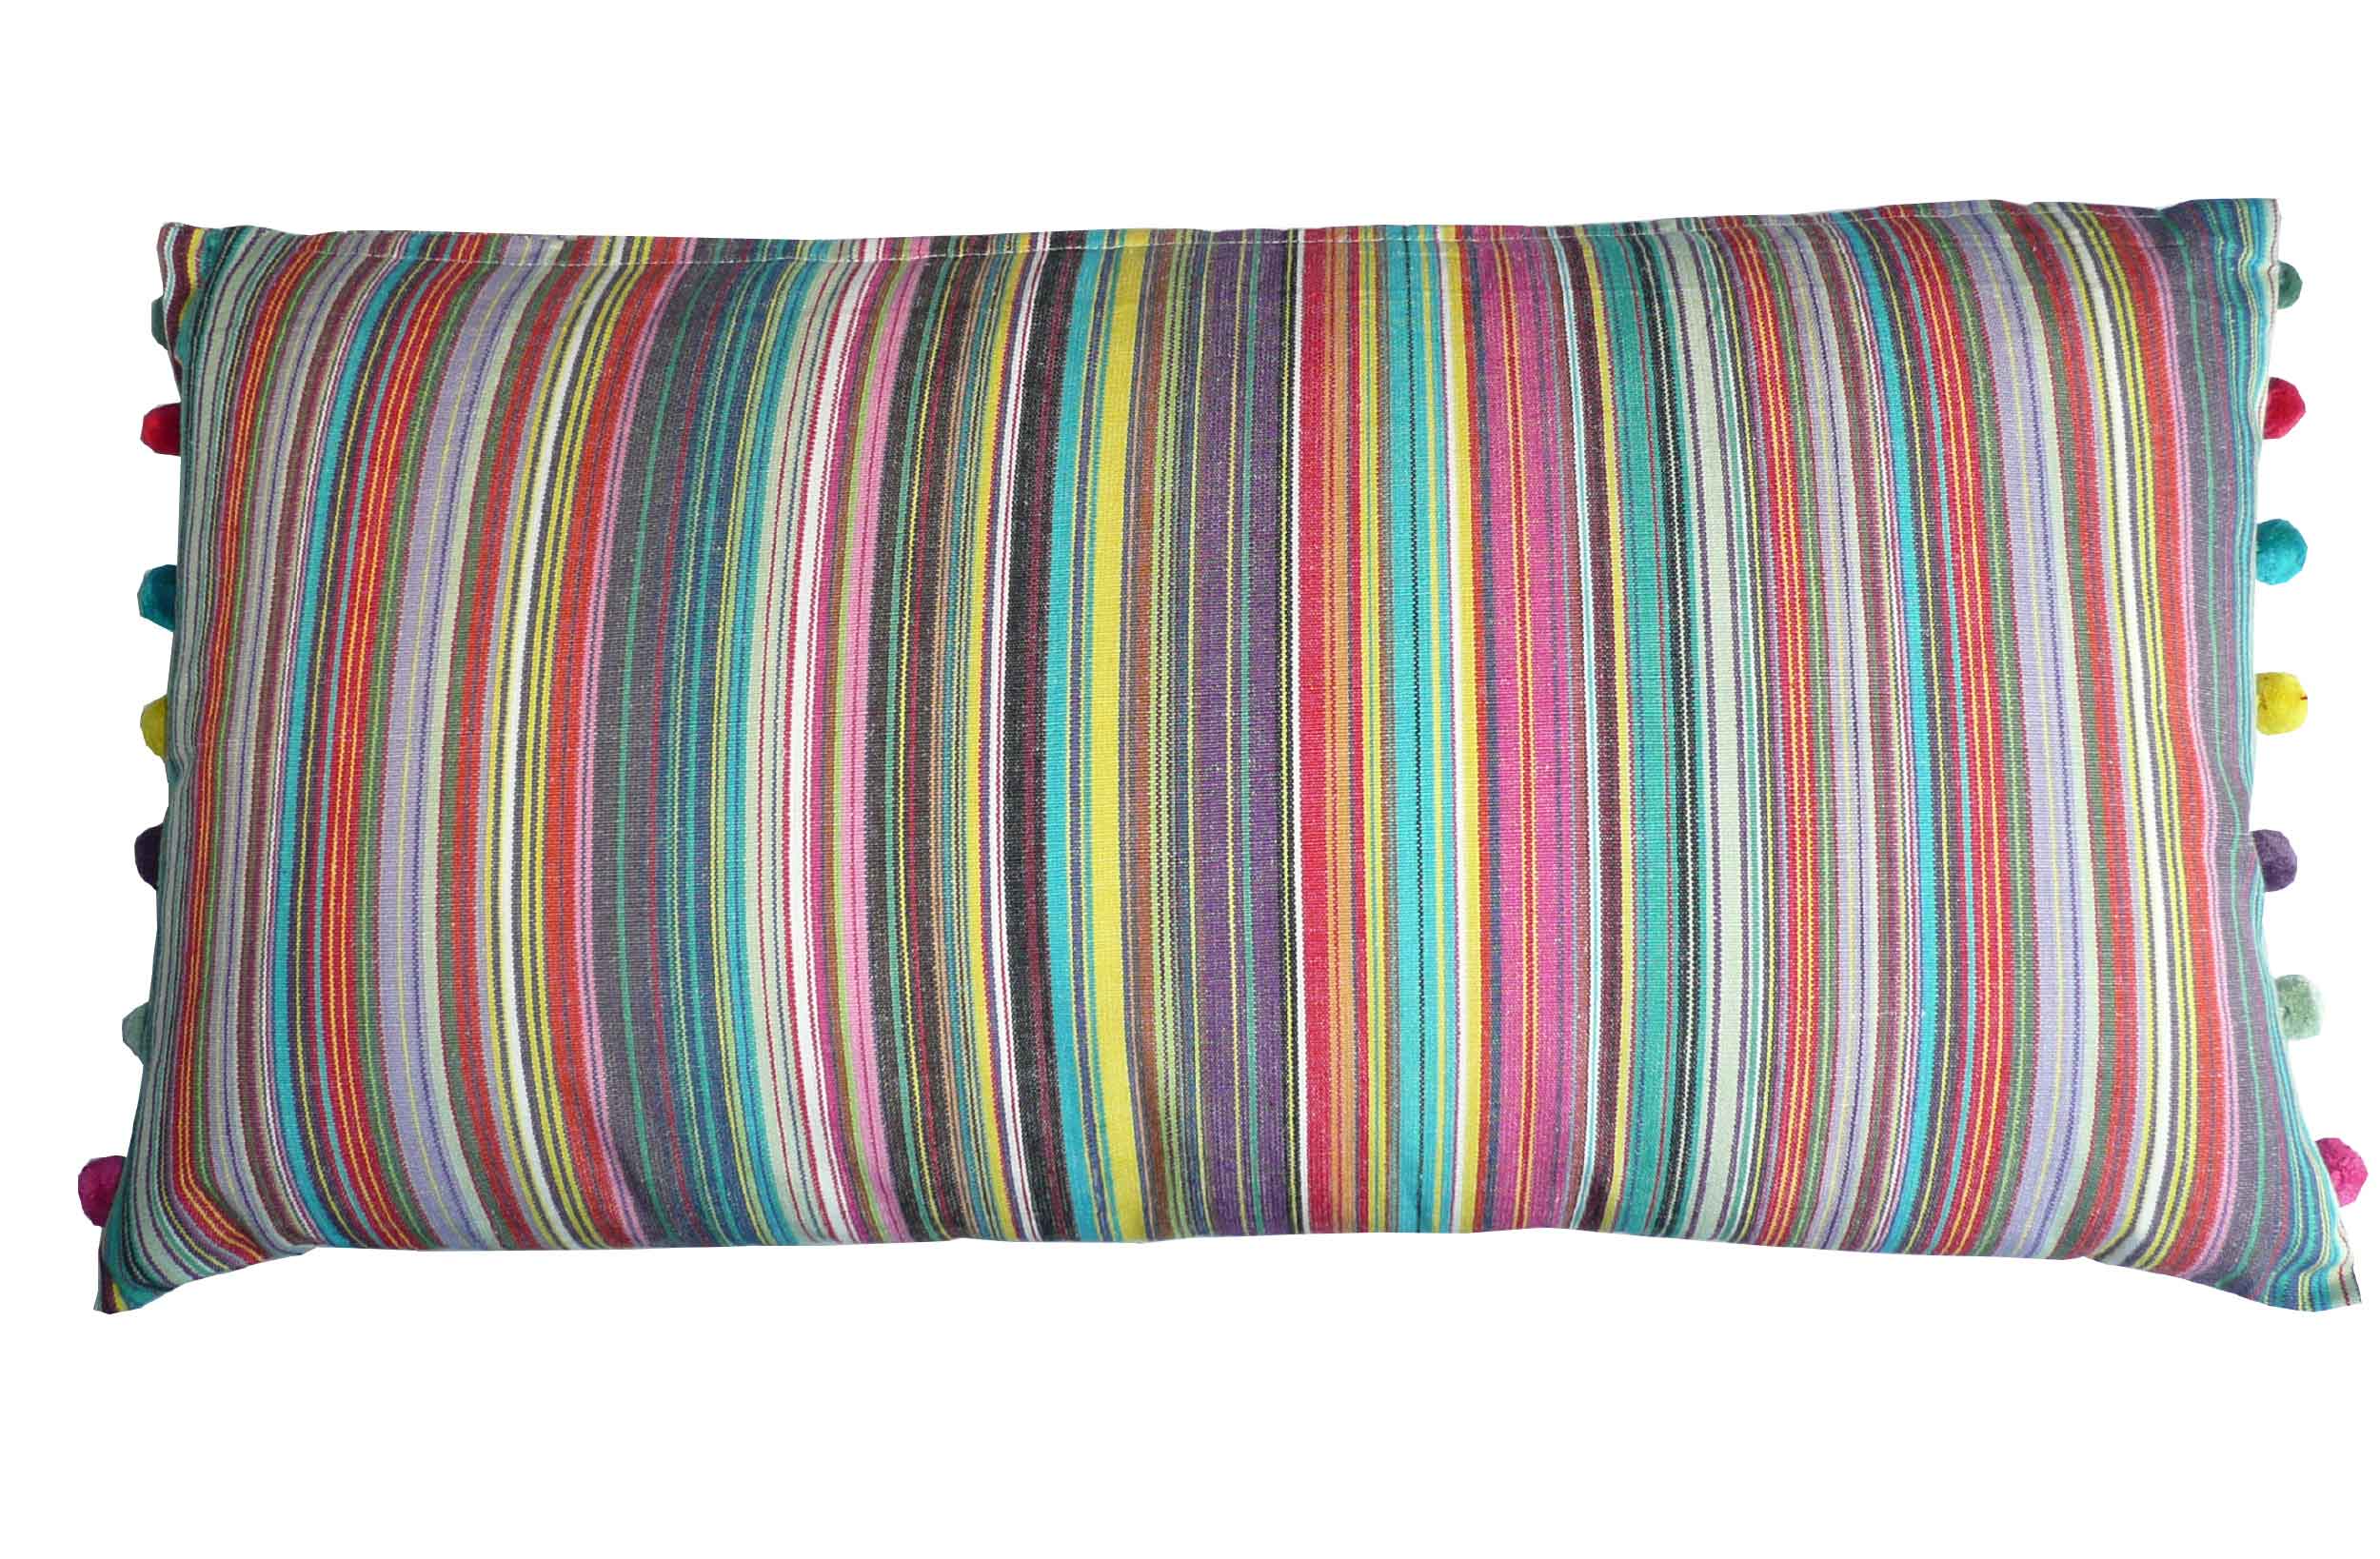 Oblong Cushions thin rainbow multi stripes | Oblong Sofa Cushions | Striped Oblong Cushions with bobble fringe 